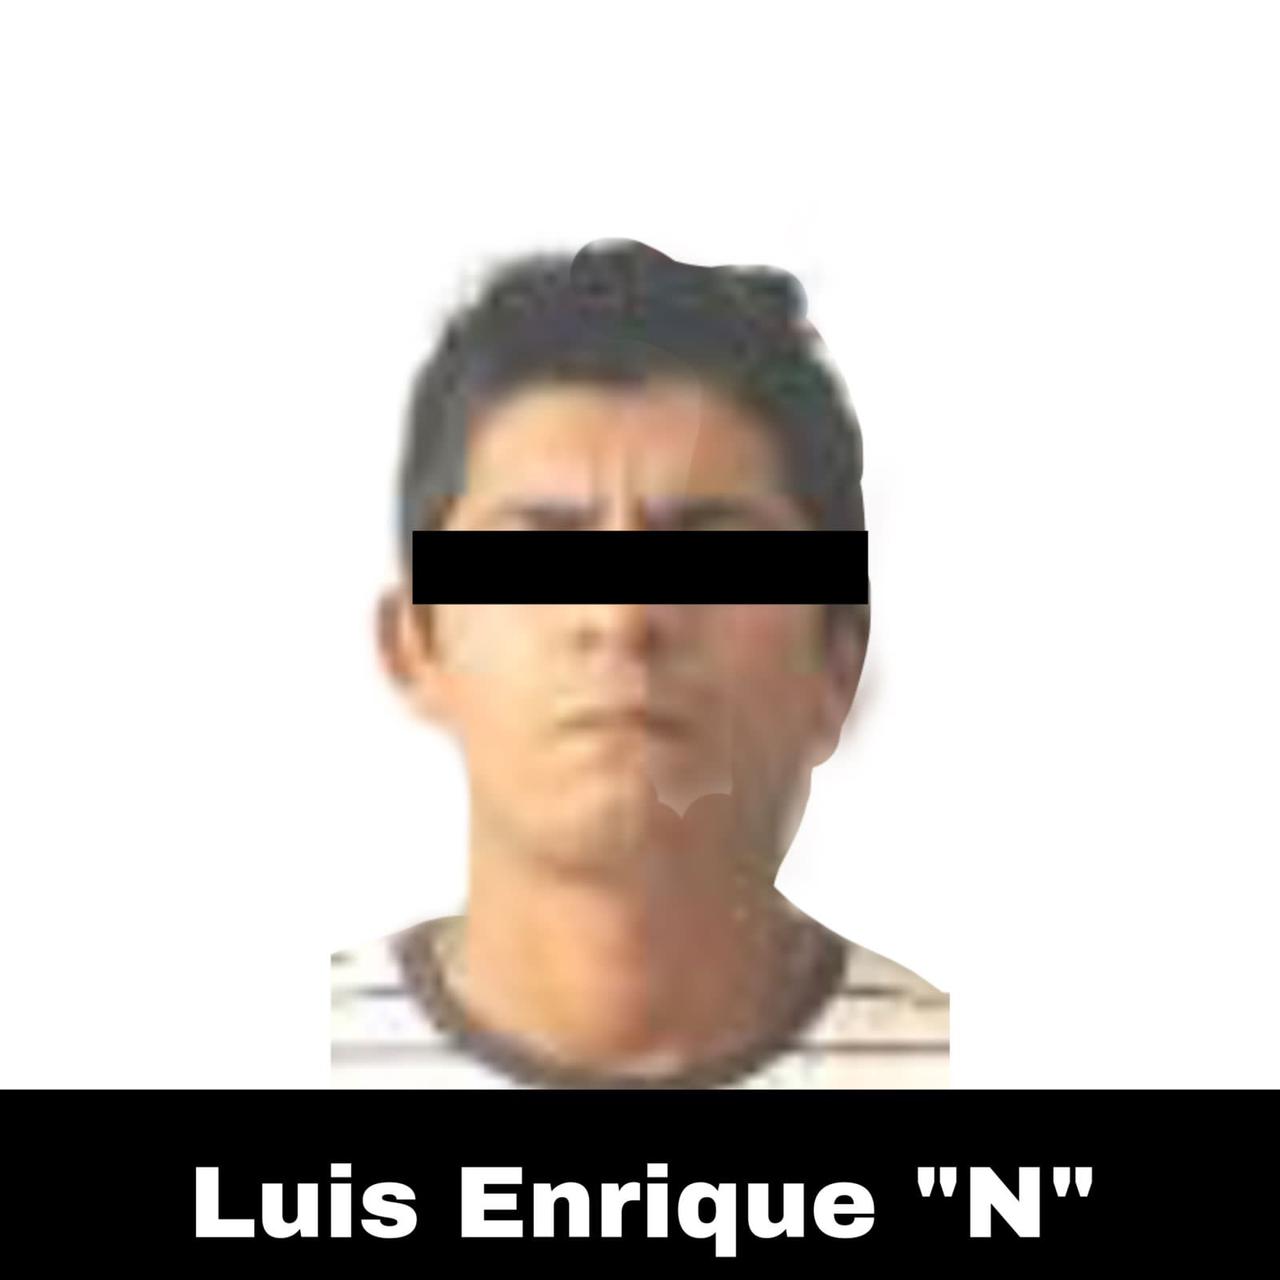 SSP captura a 3 presuntos narcomenudistas en Xalapa